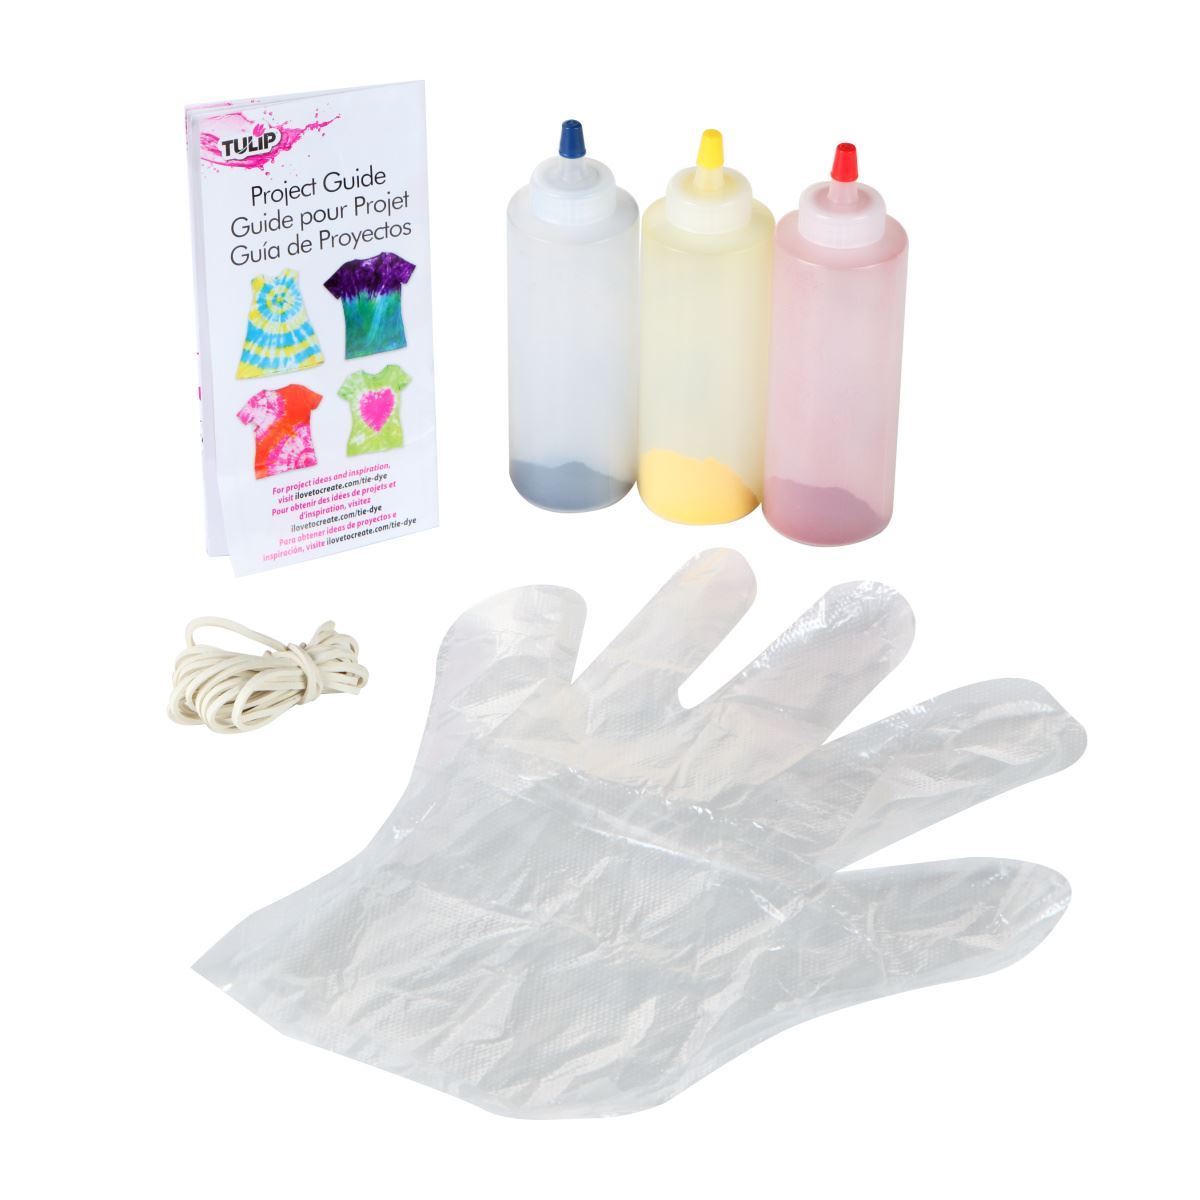 Technique Tie-Dye Kits – Tulip Color Crafts